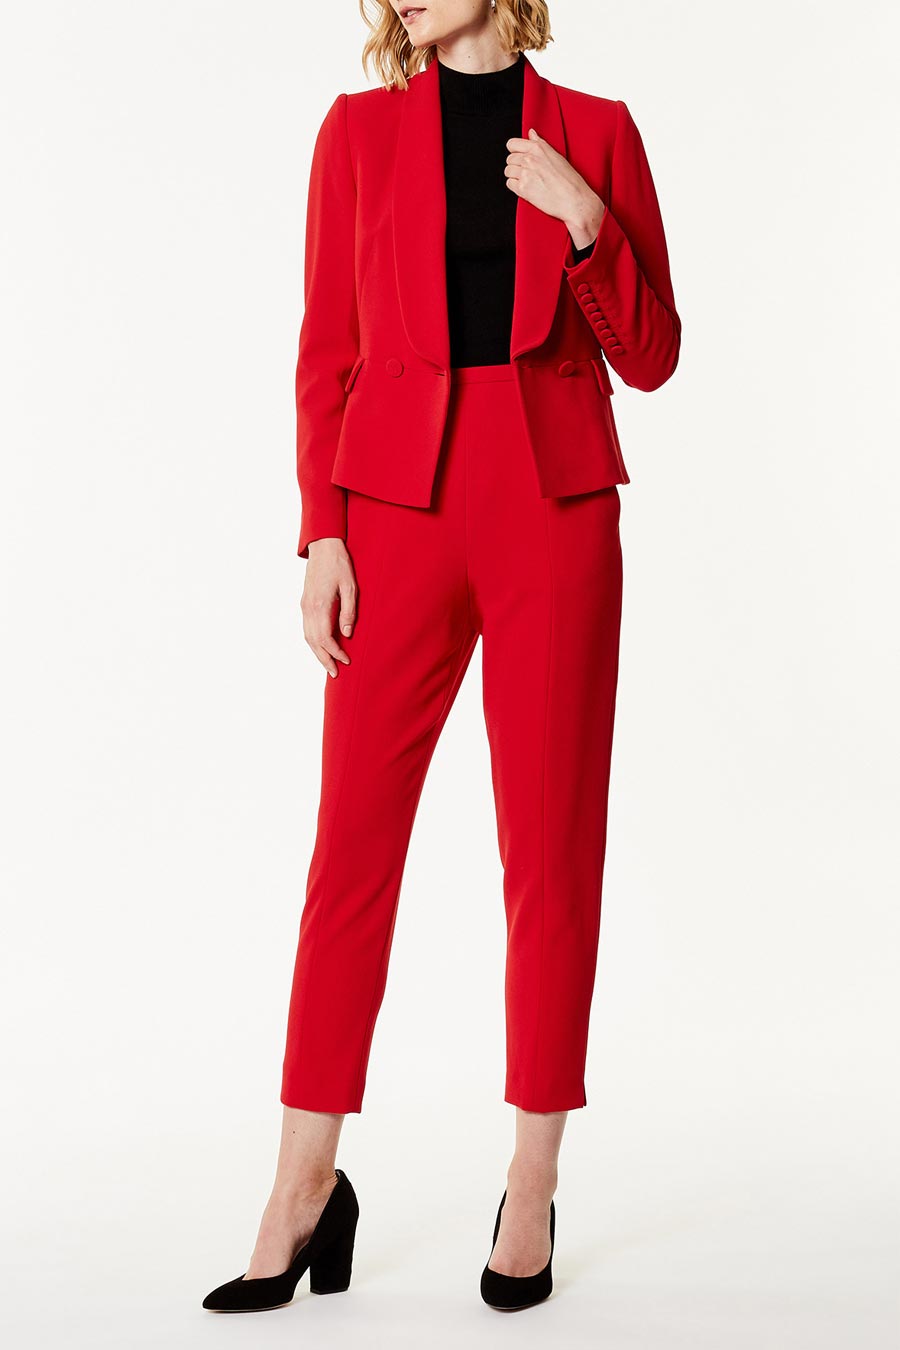 Karen Millen Waist Emphasis Tailored Jacket